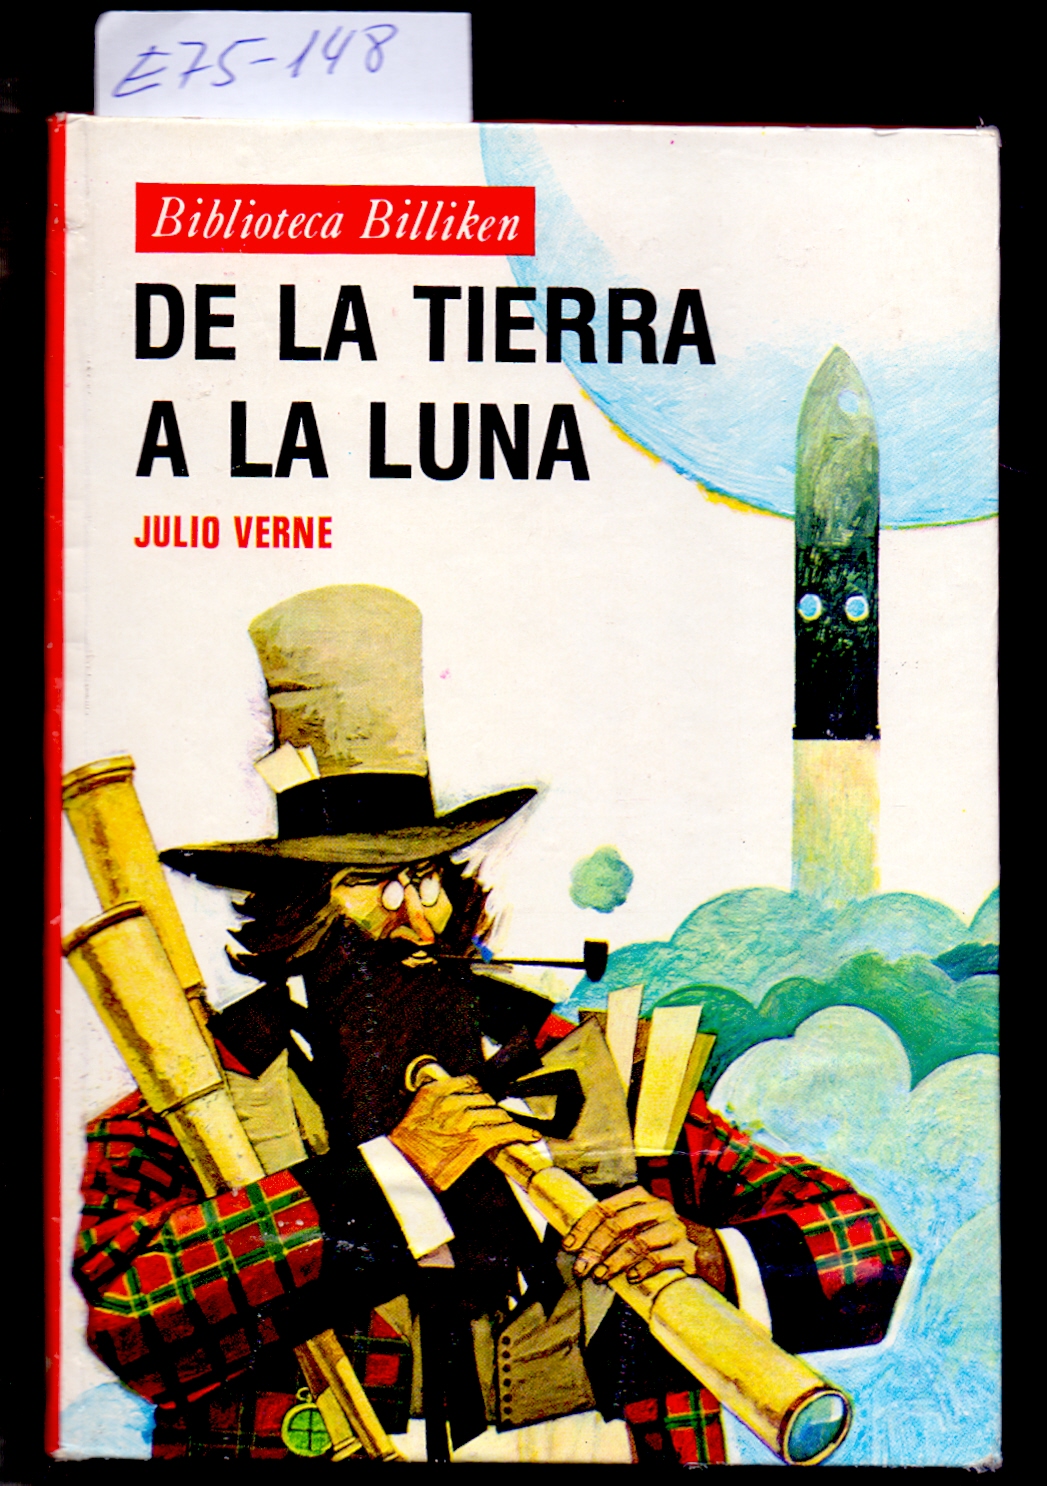 DE LA TIERRA A LA LUNA - Julio Verne / Traduccion y adaptacion de Pedro Miguel Fuentes / Ilustraciones de Enrique Brecia